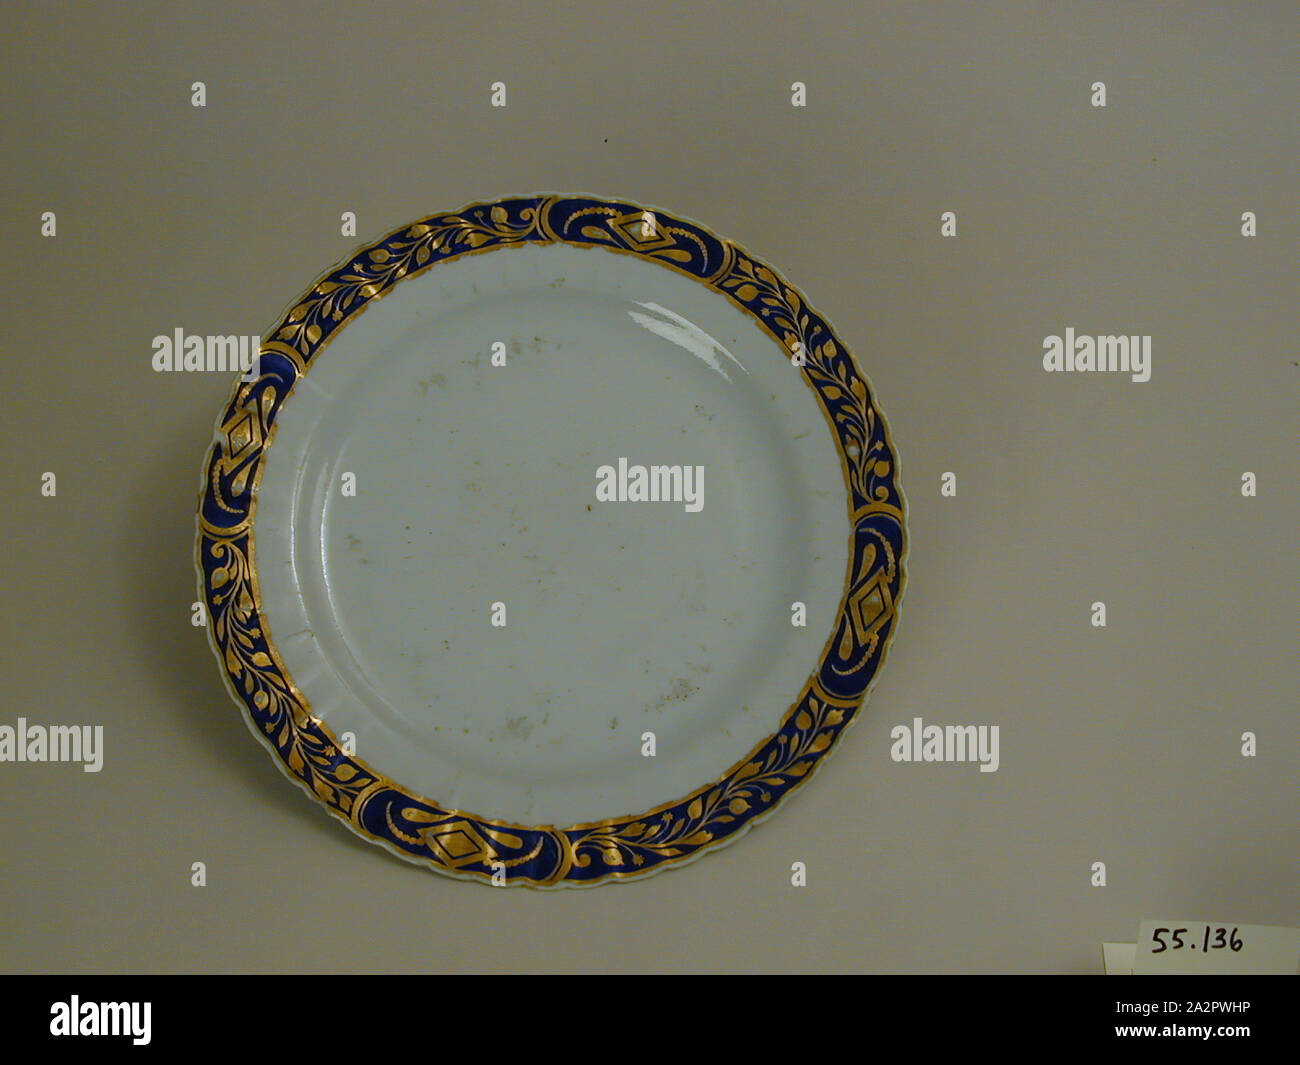 (Inconnu), chinois, 18e siècle Plaque émaillée, porcelaine pâte dure avec émail polychrome et dorure, Hauteur x diamètre : 15/16 x 9 3/4 in. (2,4 x 24,8 cm Banque D'Images